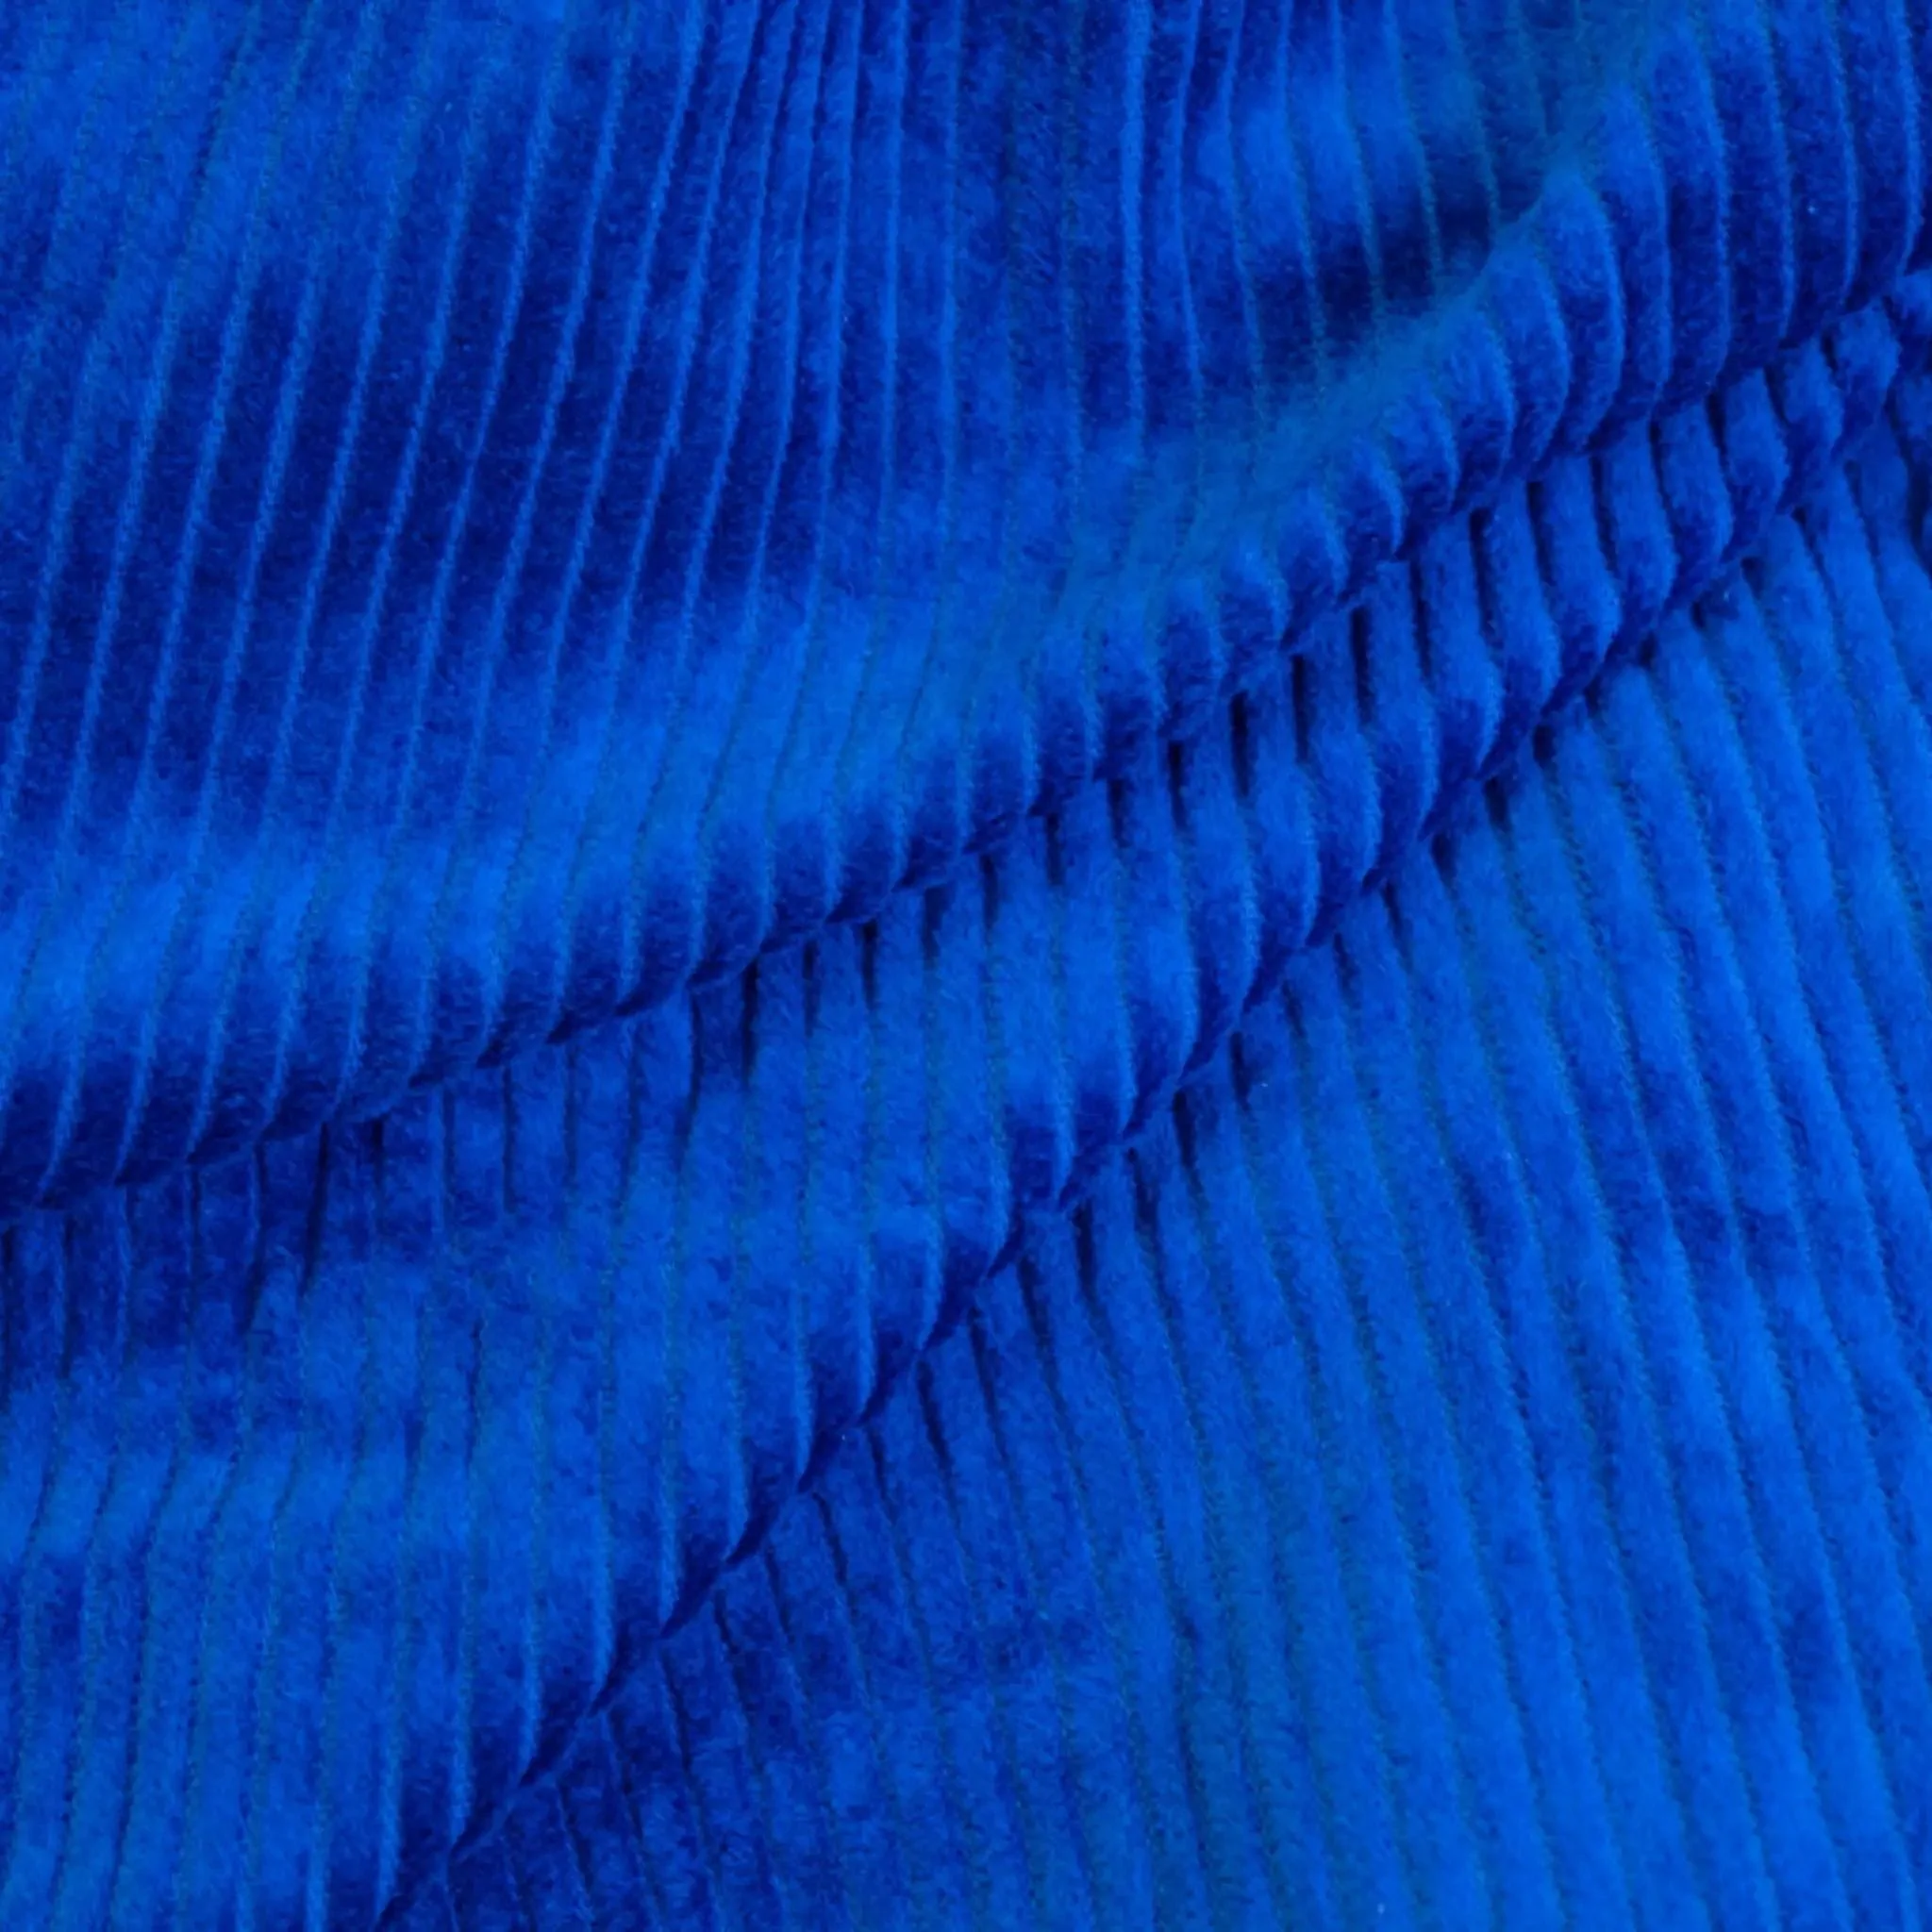 buddabag-cover-in-blue-cord_ec5fdf4a-a296-4c3b-914e-d0b8844a883c